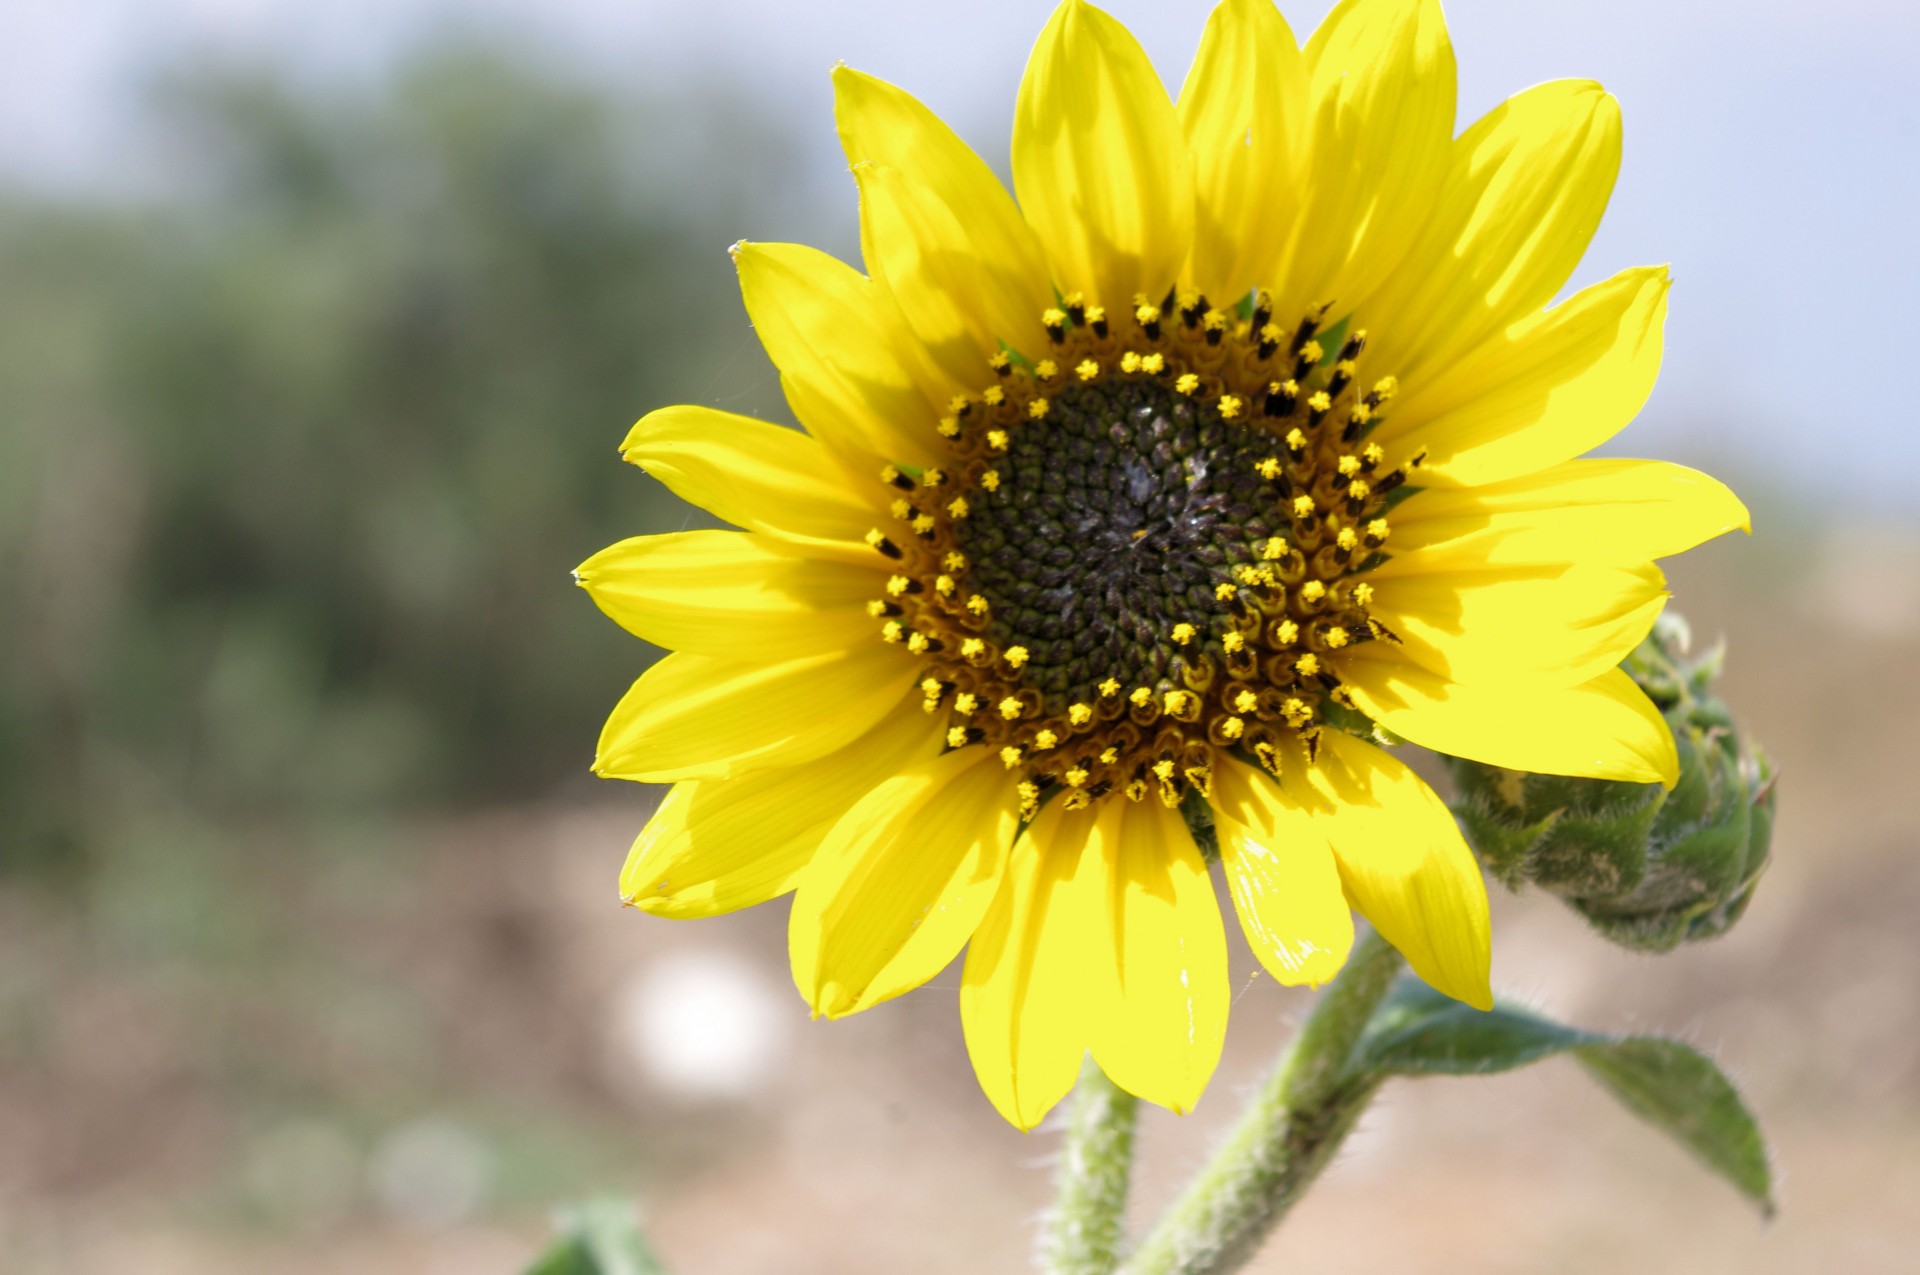 the sunflower yellow sun free photo